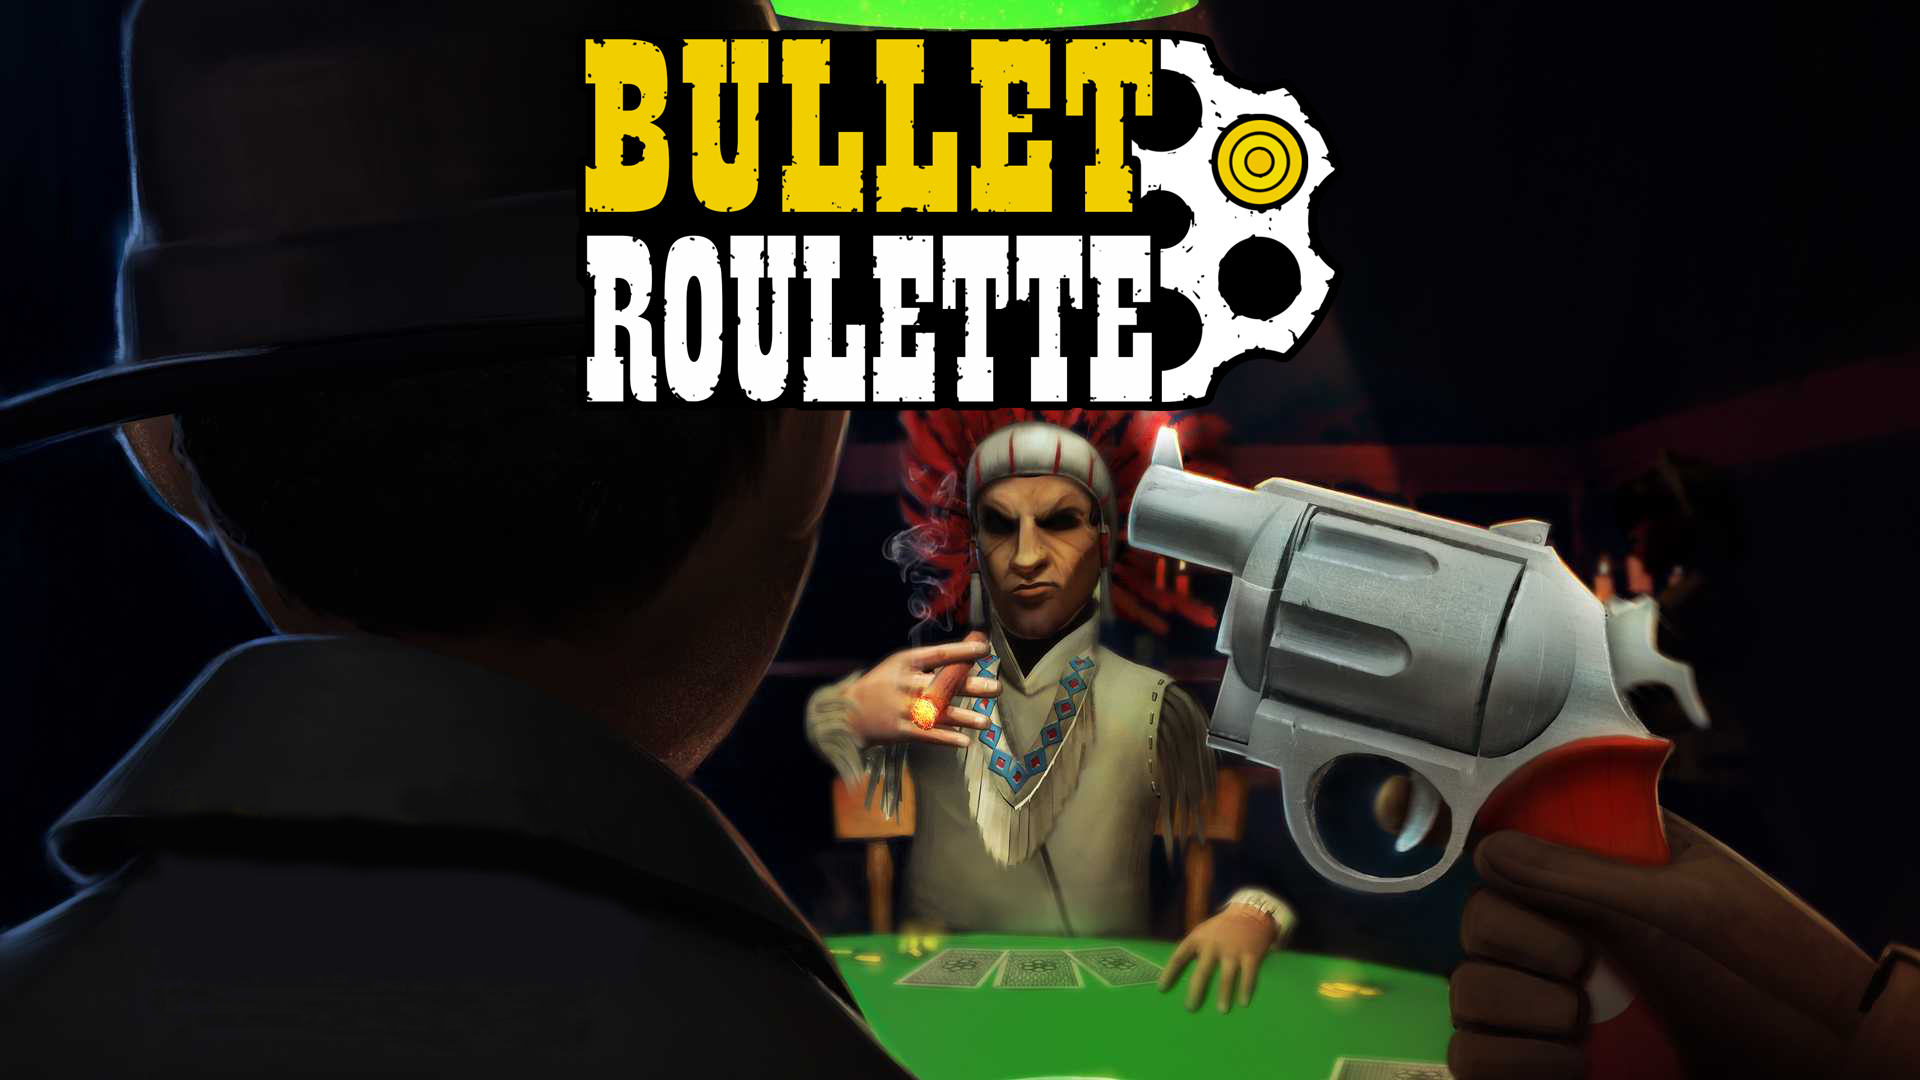 bullet roulette psvr